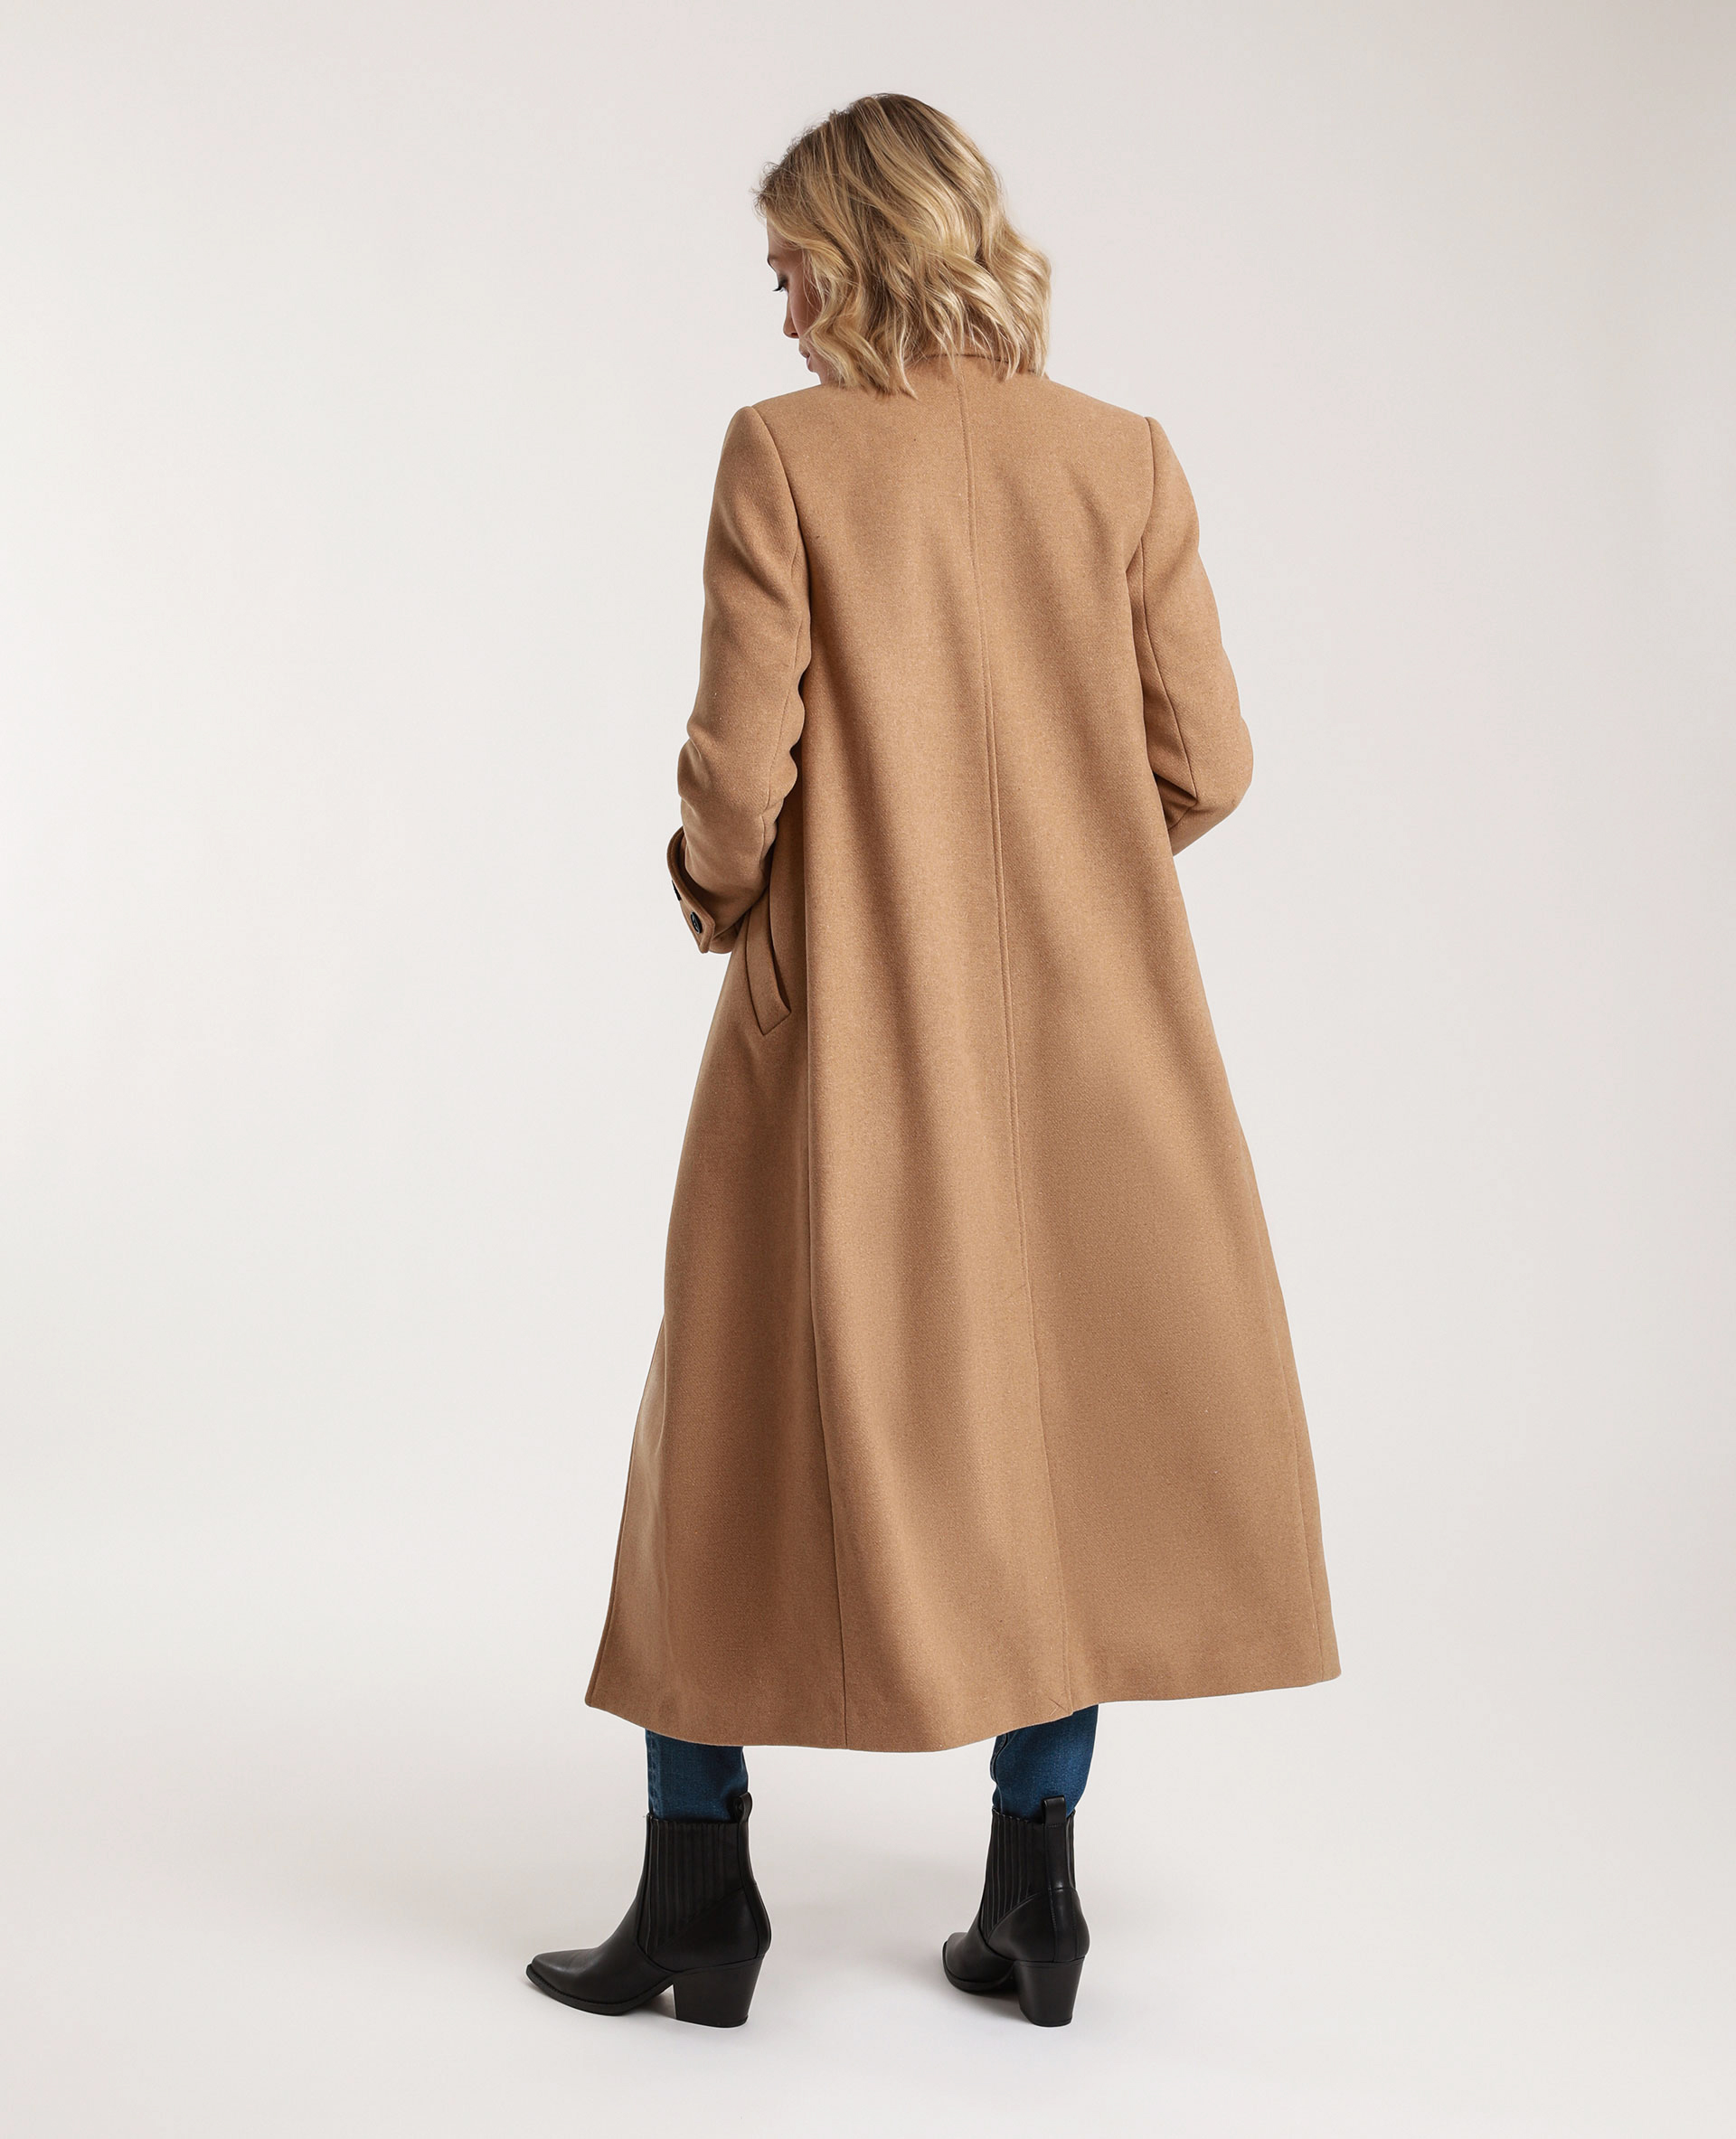 Manteau long avec laine camel - Pimkie